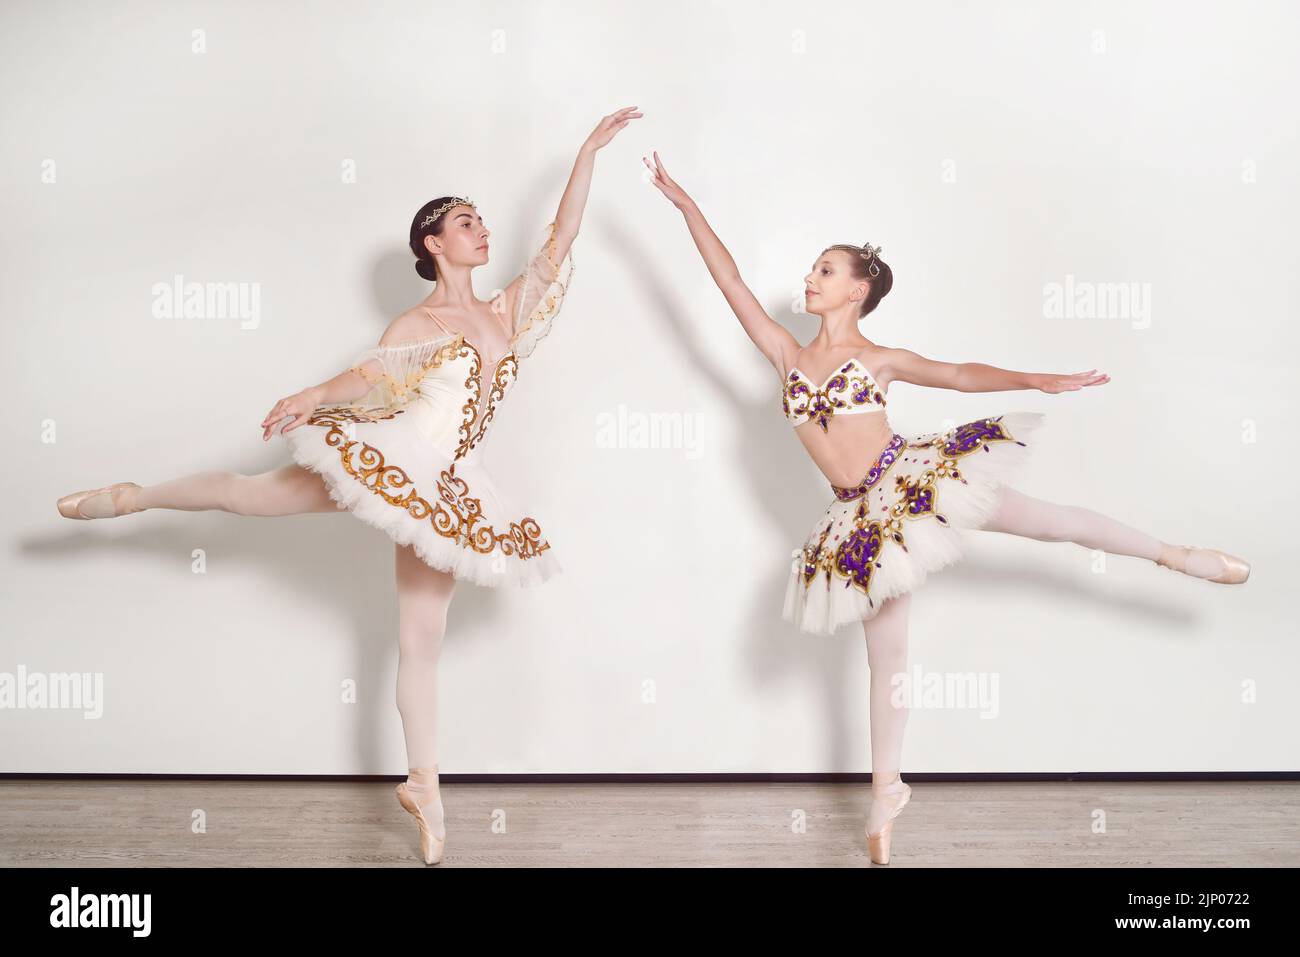 Deux ballerinas jeunes pratiquant le ballet pose sur un fond blanc Banque D'Images